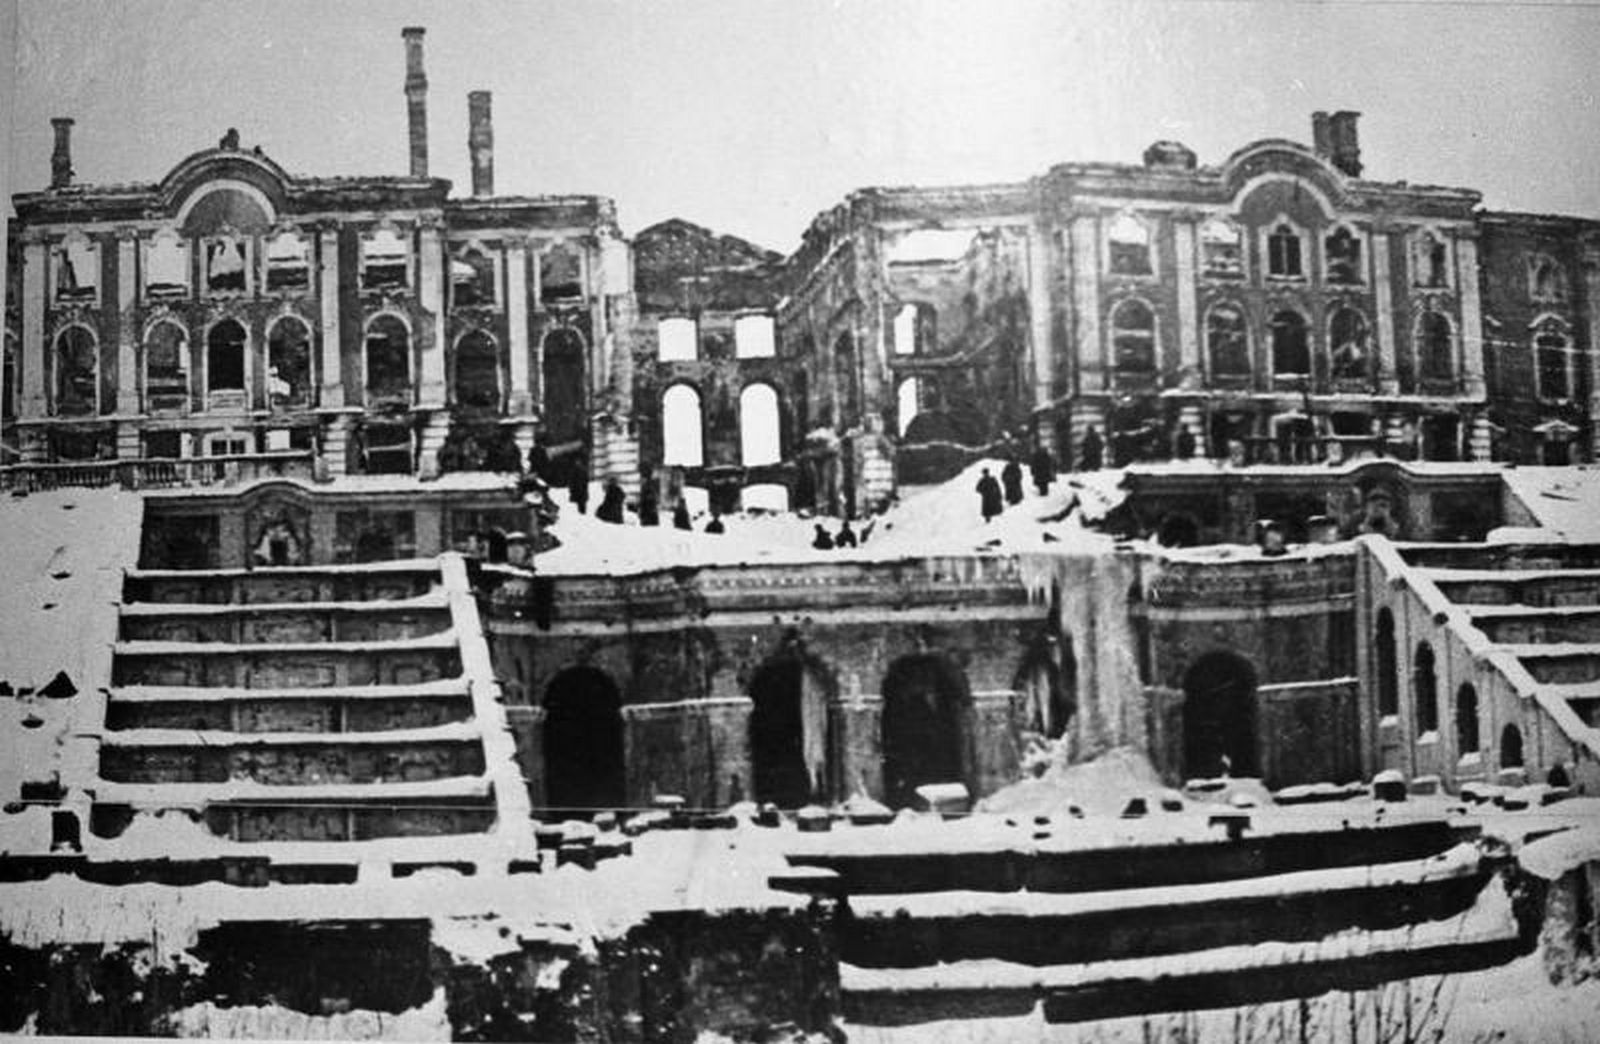 зимний дворец в блокаду ленинграда